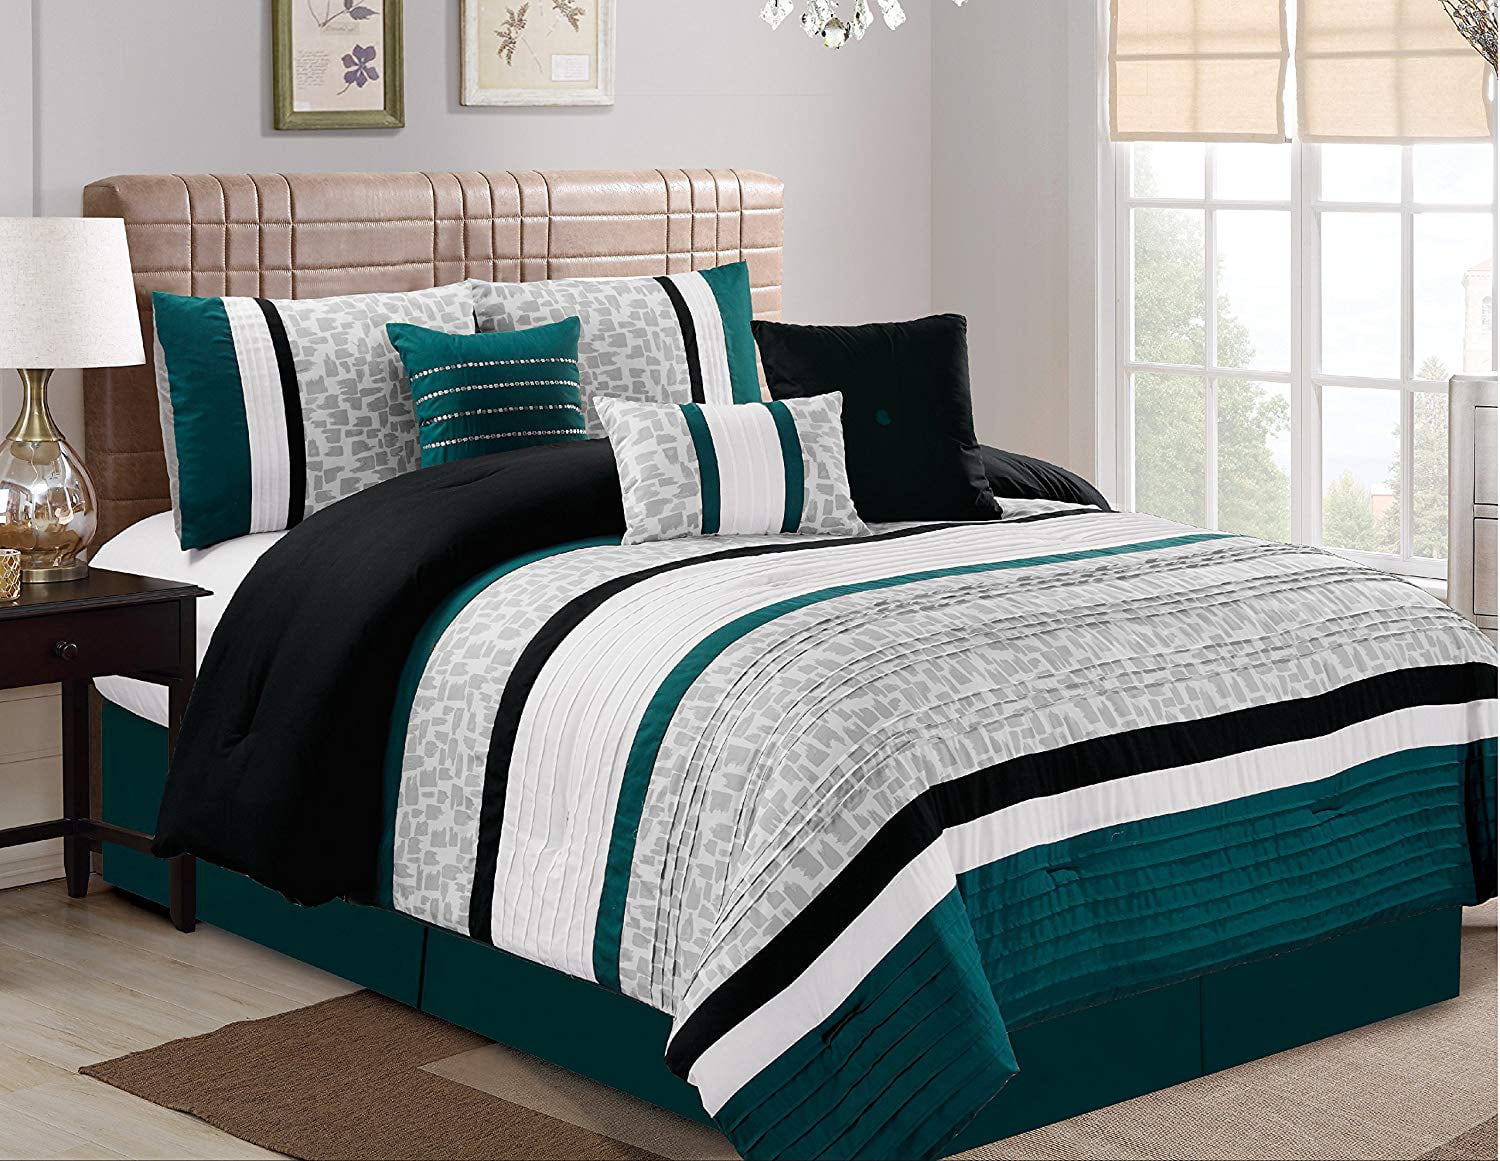 Hgmart Bedding Comforter Set 7 Piece, Grey King Size Bed Comforter Sets